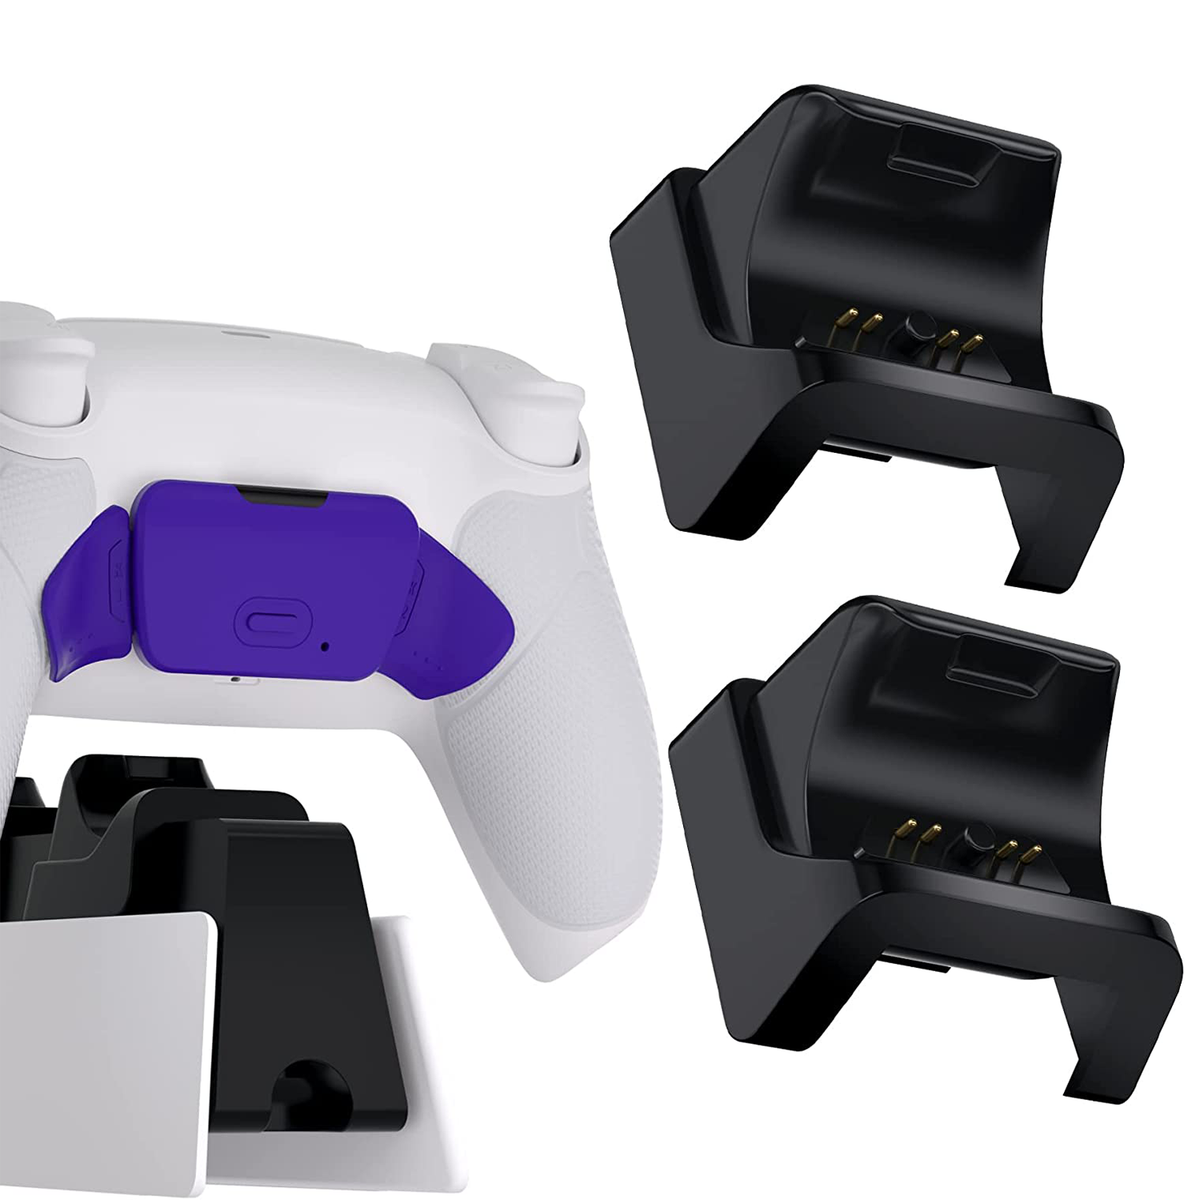 Void Gaming エリートモデル PS5 コントローラー【充電スタンド付】 - テレビゲーム